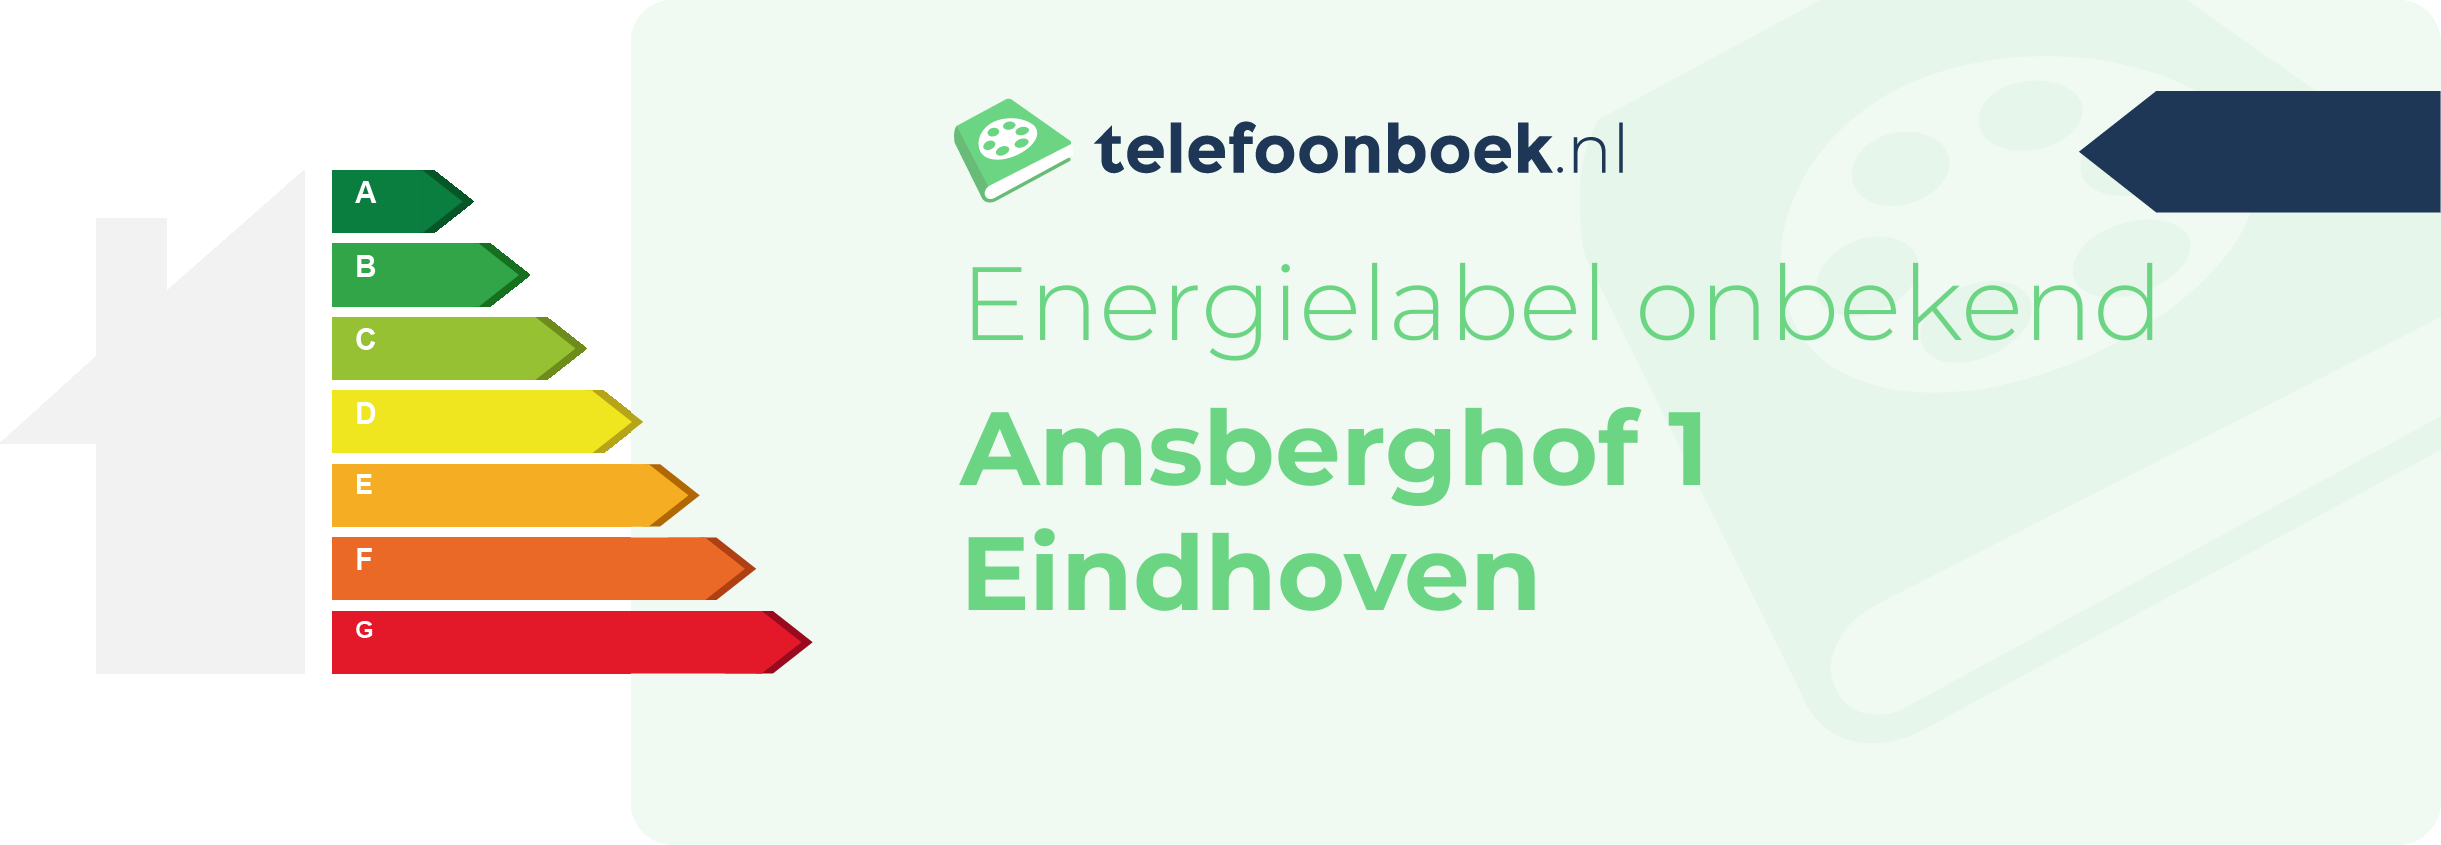 Energielabel Amsberghof 1 Eindhoven